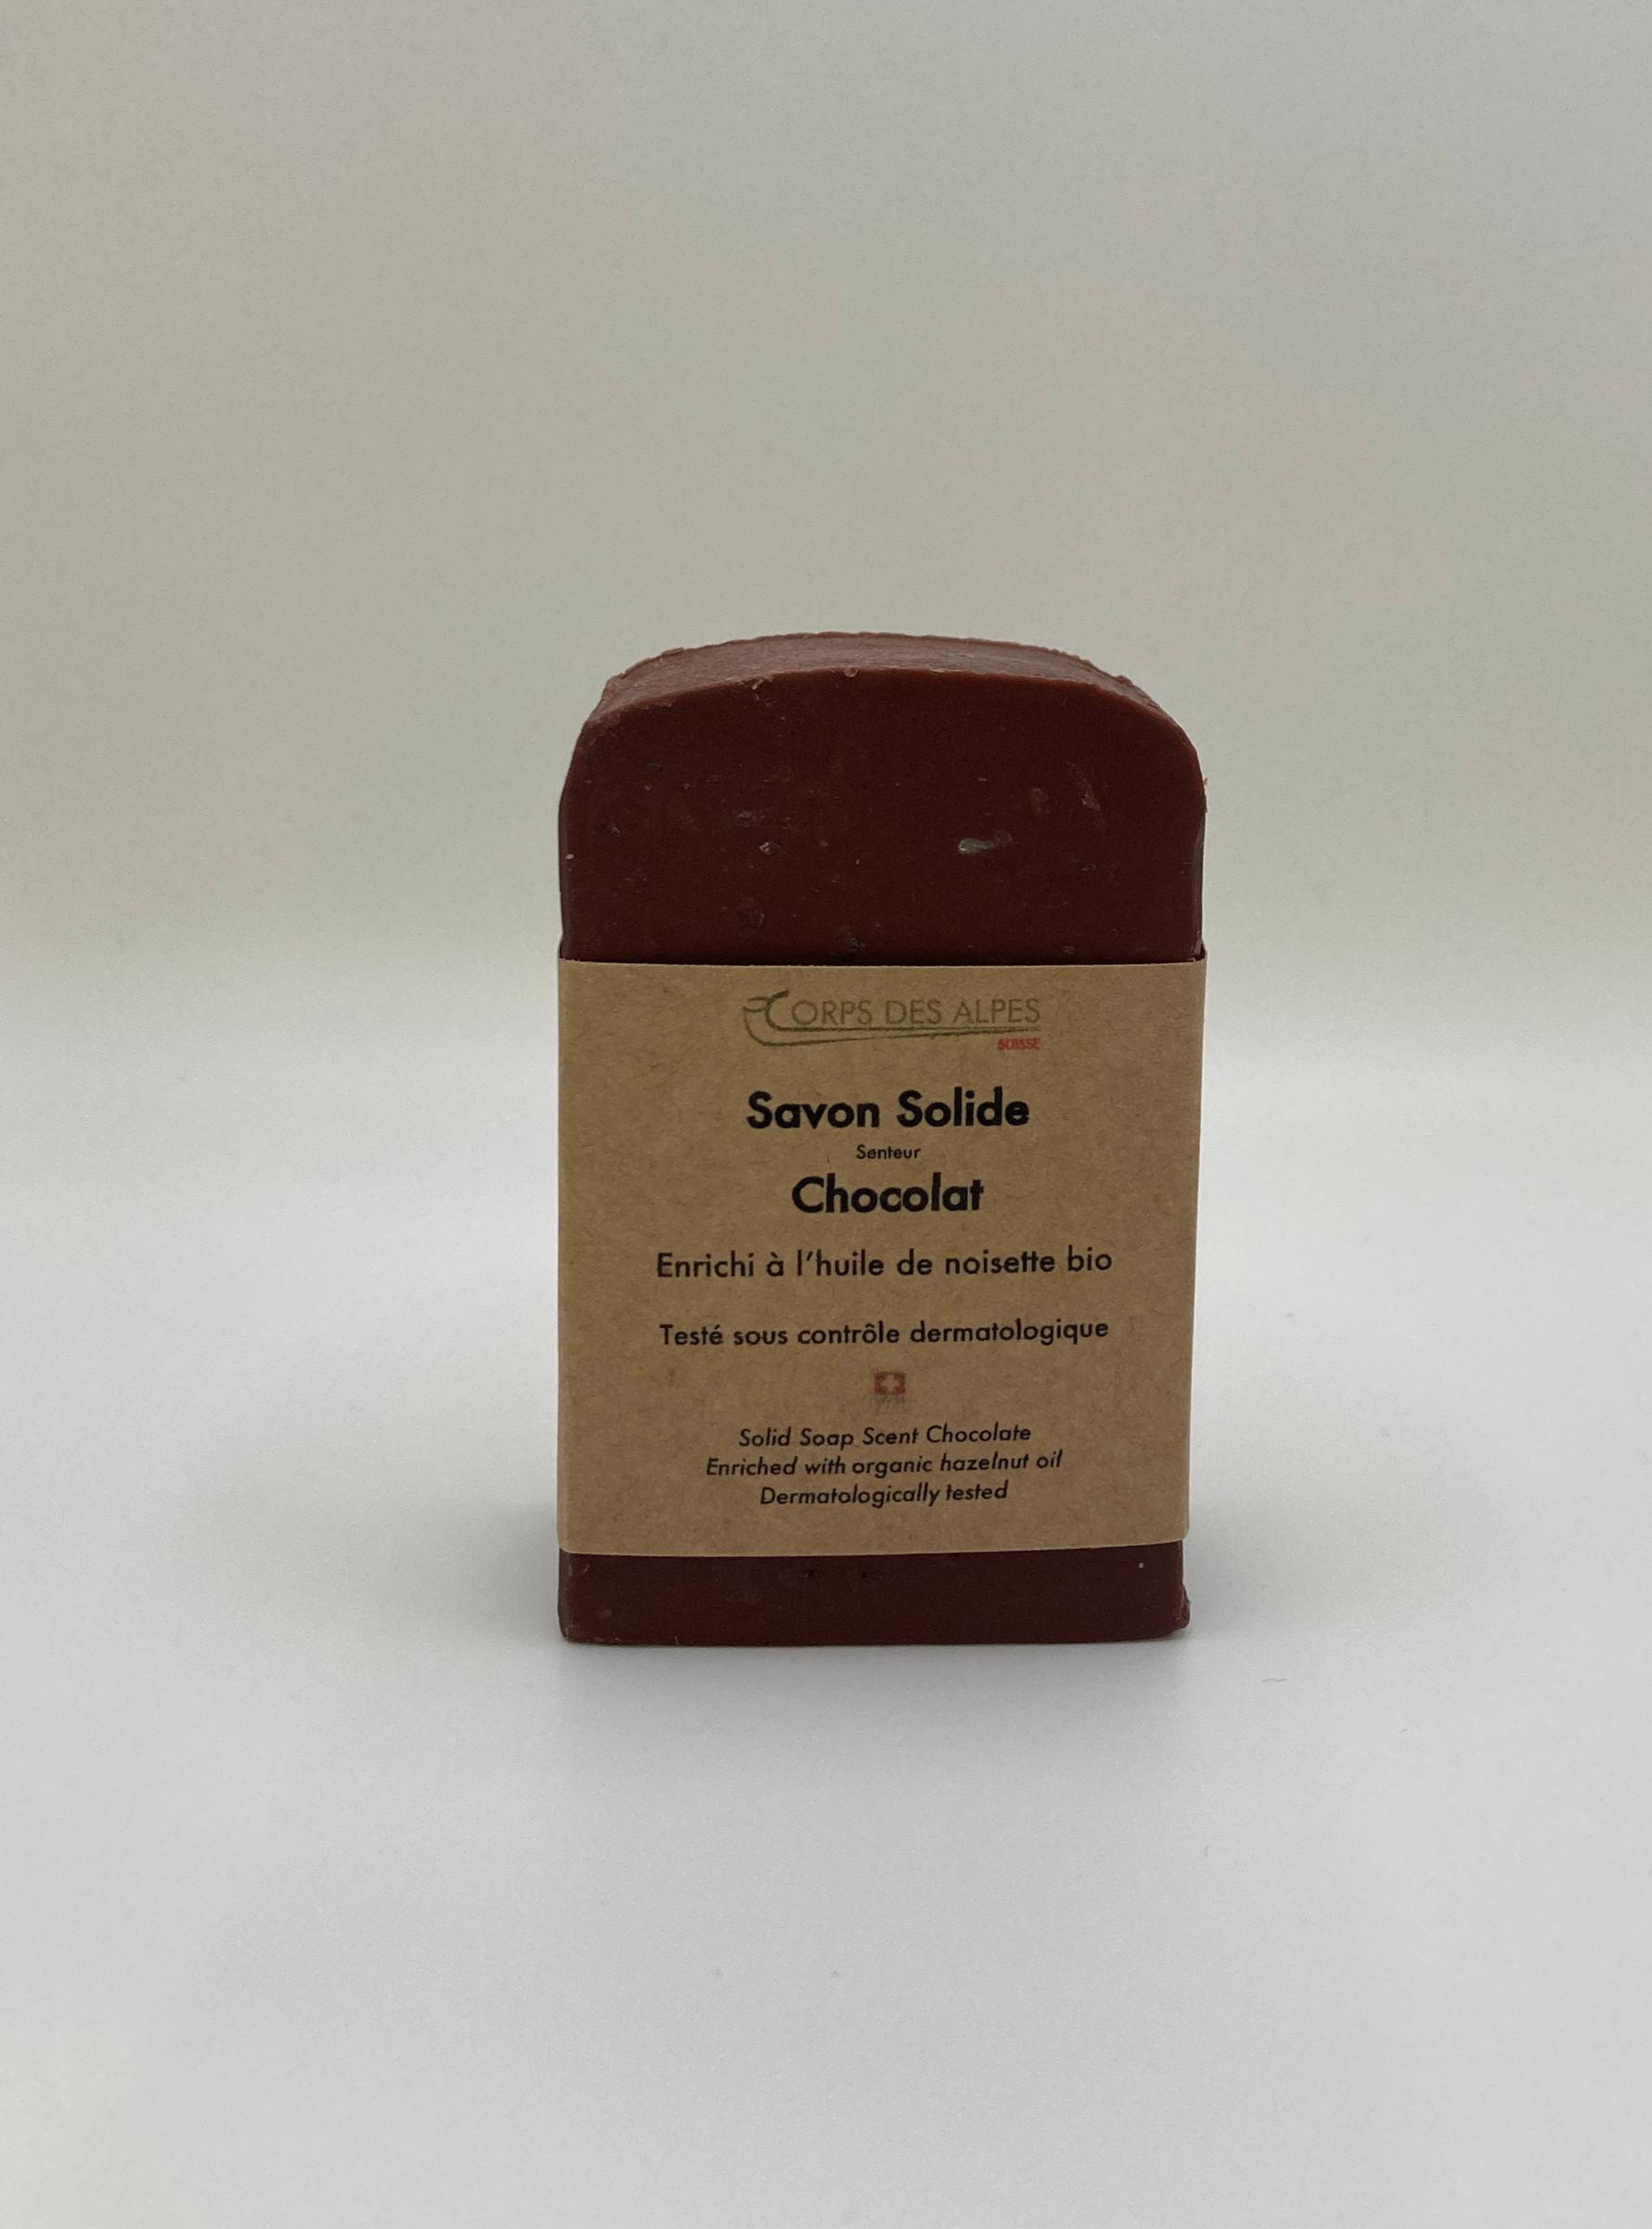 Savon Solide senteur Chocolat, handwerkliches Produkt für den Direktverkauf in der Schweiz